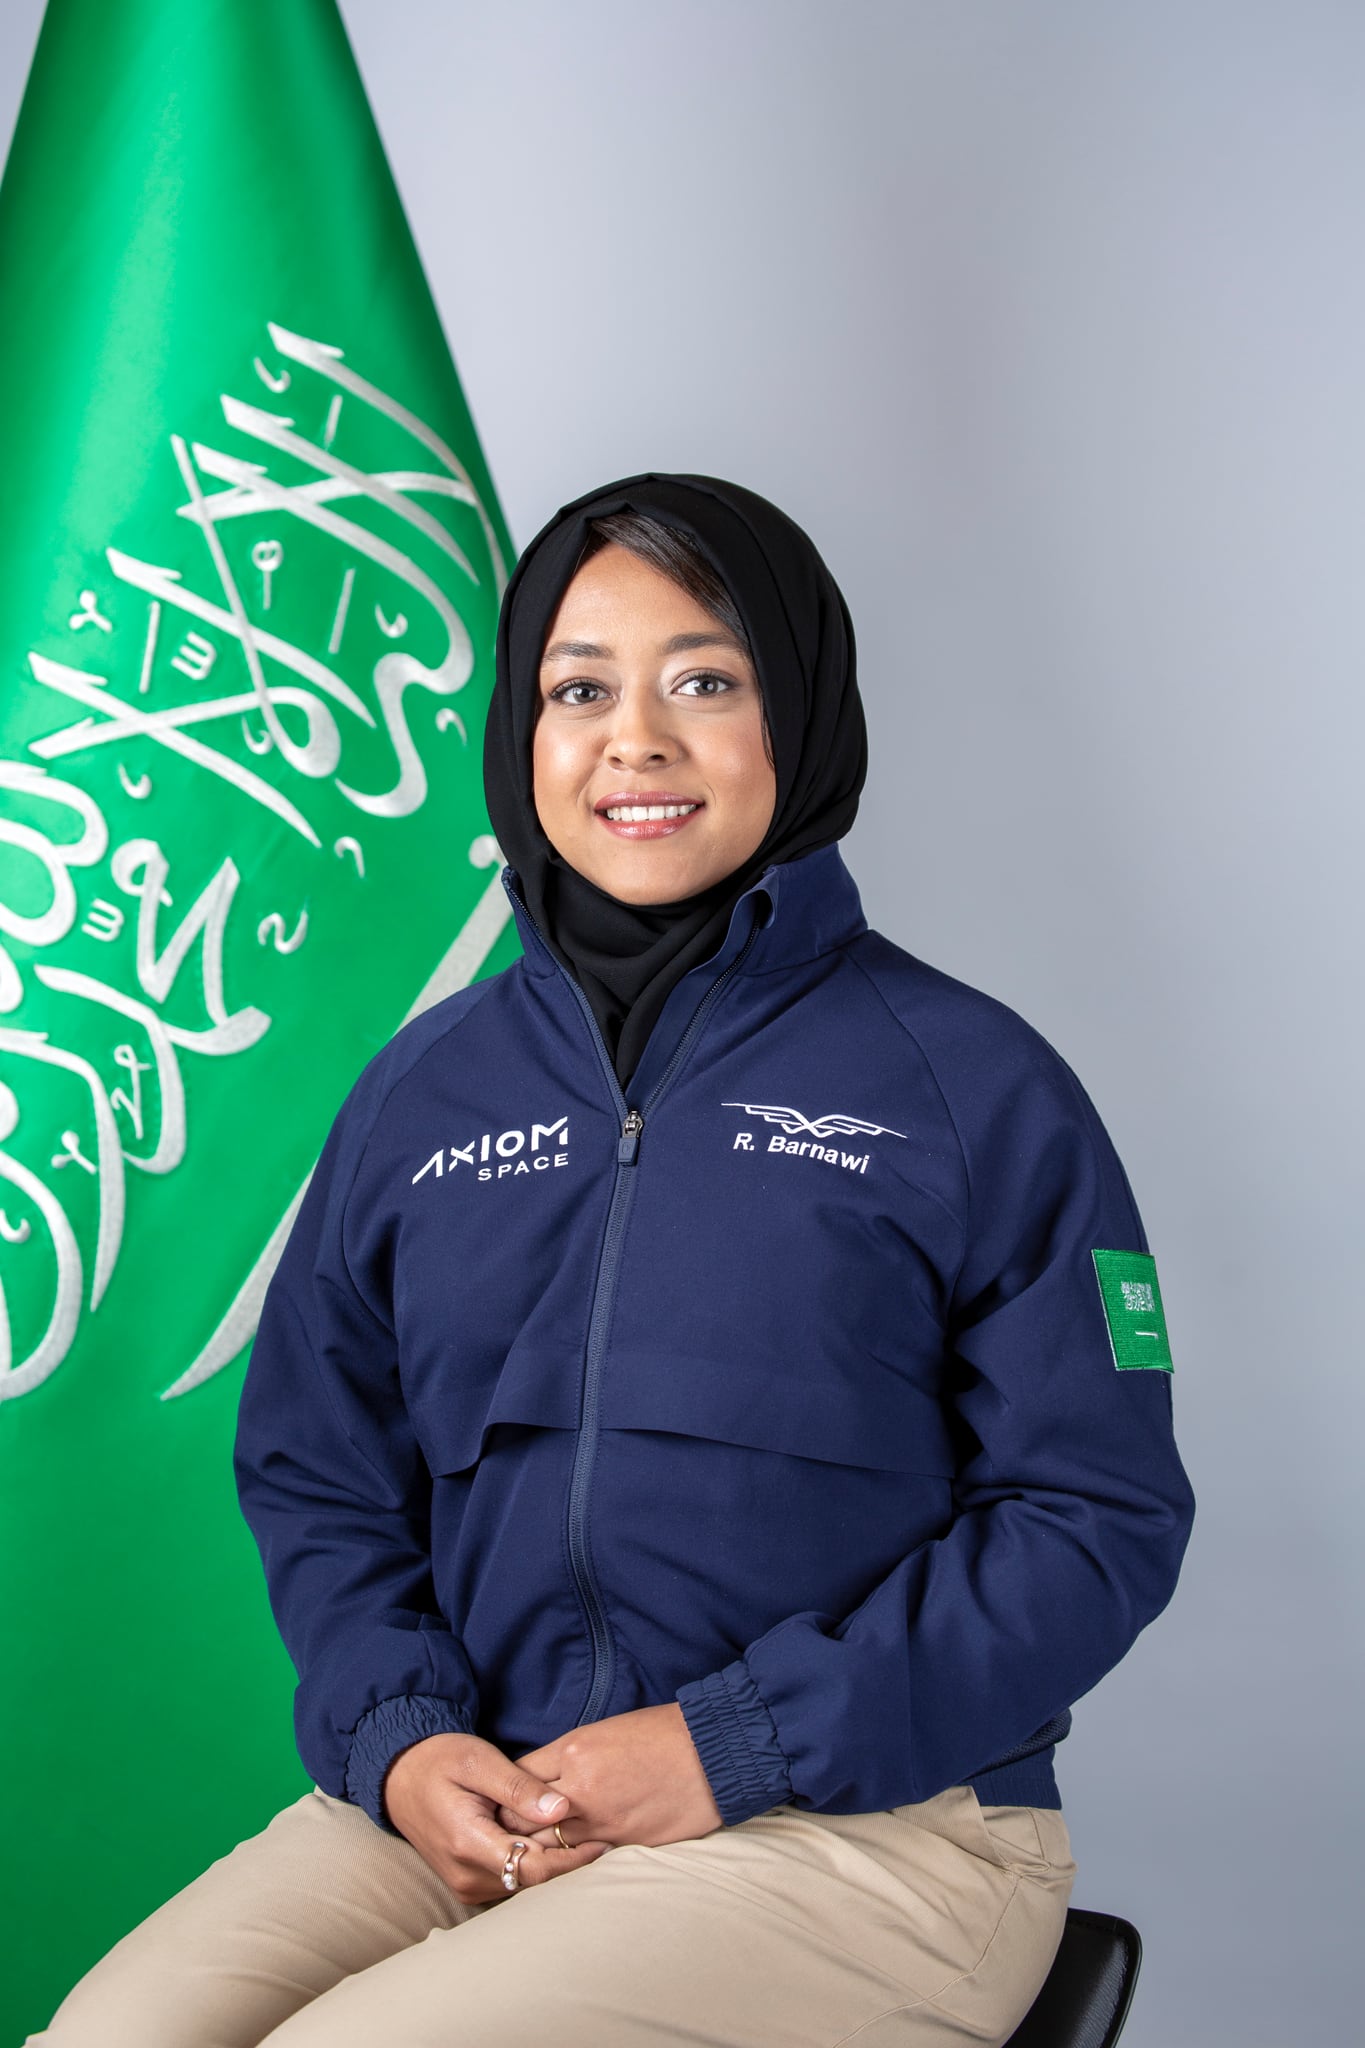 Rayyanah Barnawi es una científica que representa al Reino de Arabia Saudí como astronauta en la misión Axiom-2.